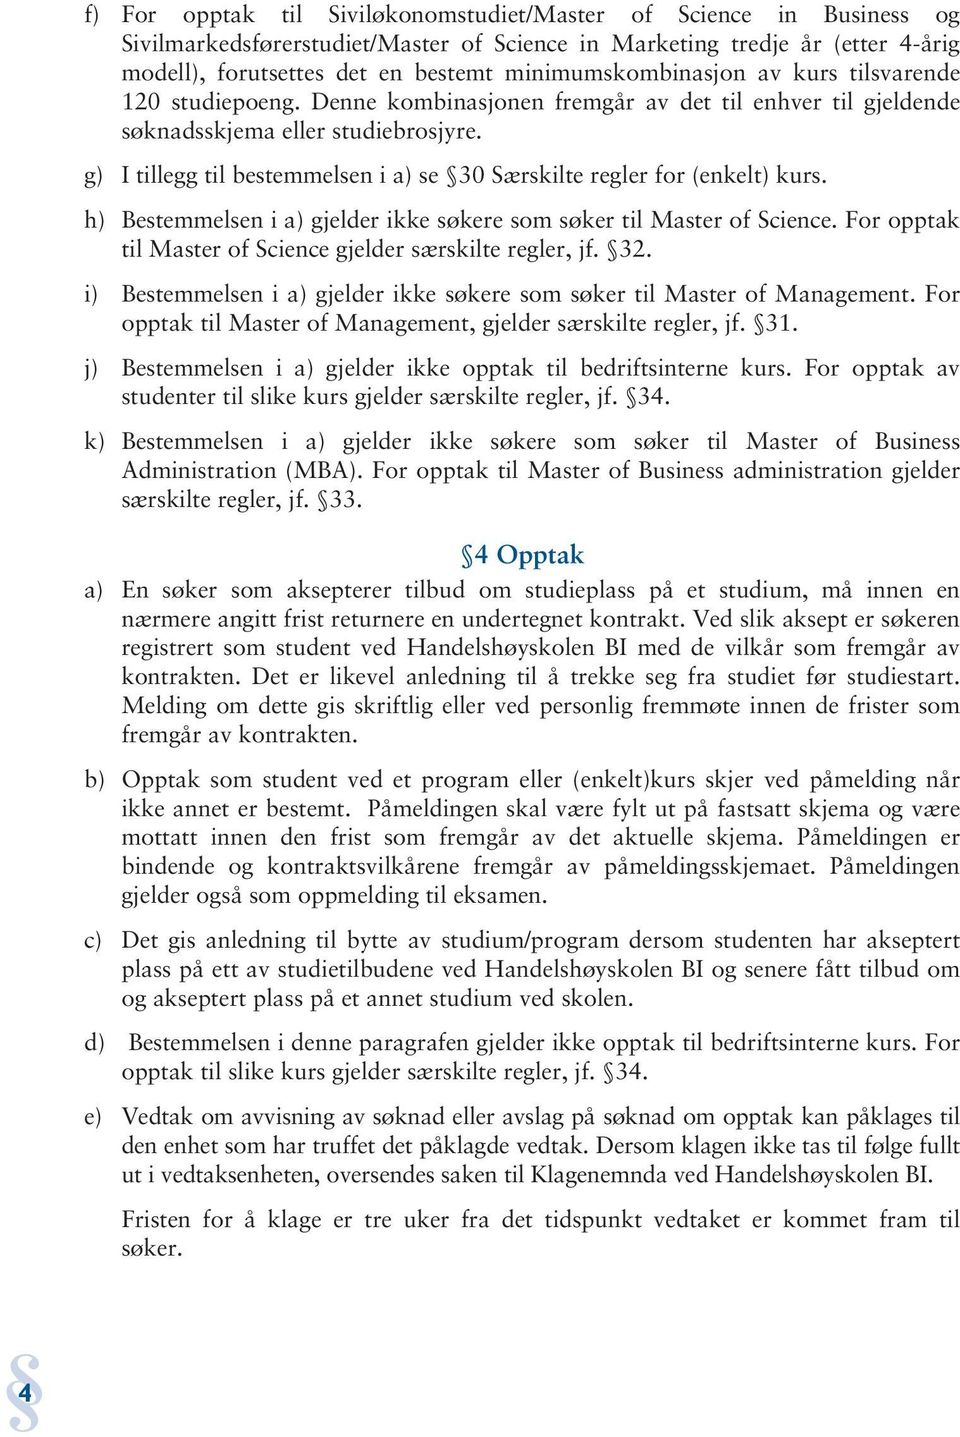 g) I tillegg til bestemmelsen i a) se 30 Særskilte regler for (enkelt) kurs. h) Bestemmelsen i a) gjelder ikke søkere som søker til Master of Science.